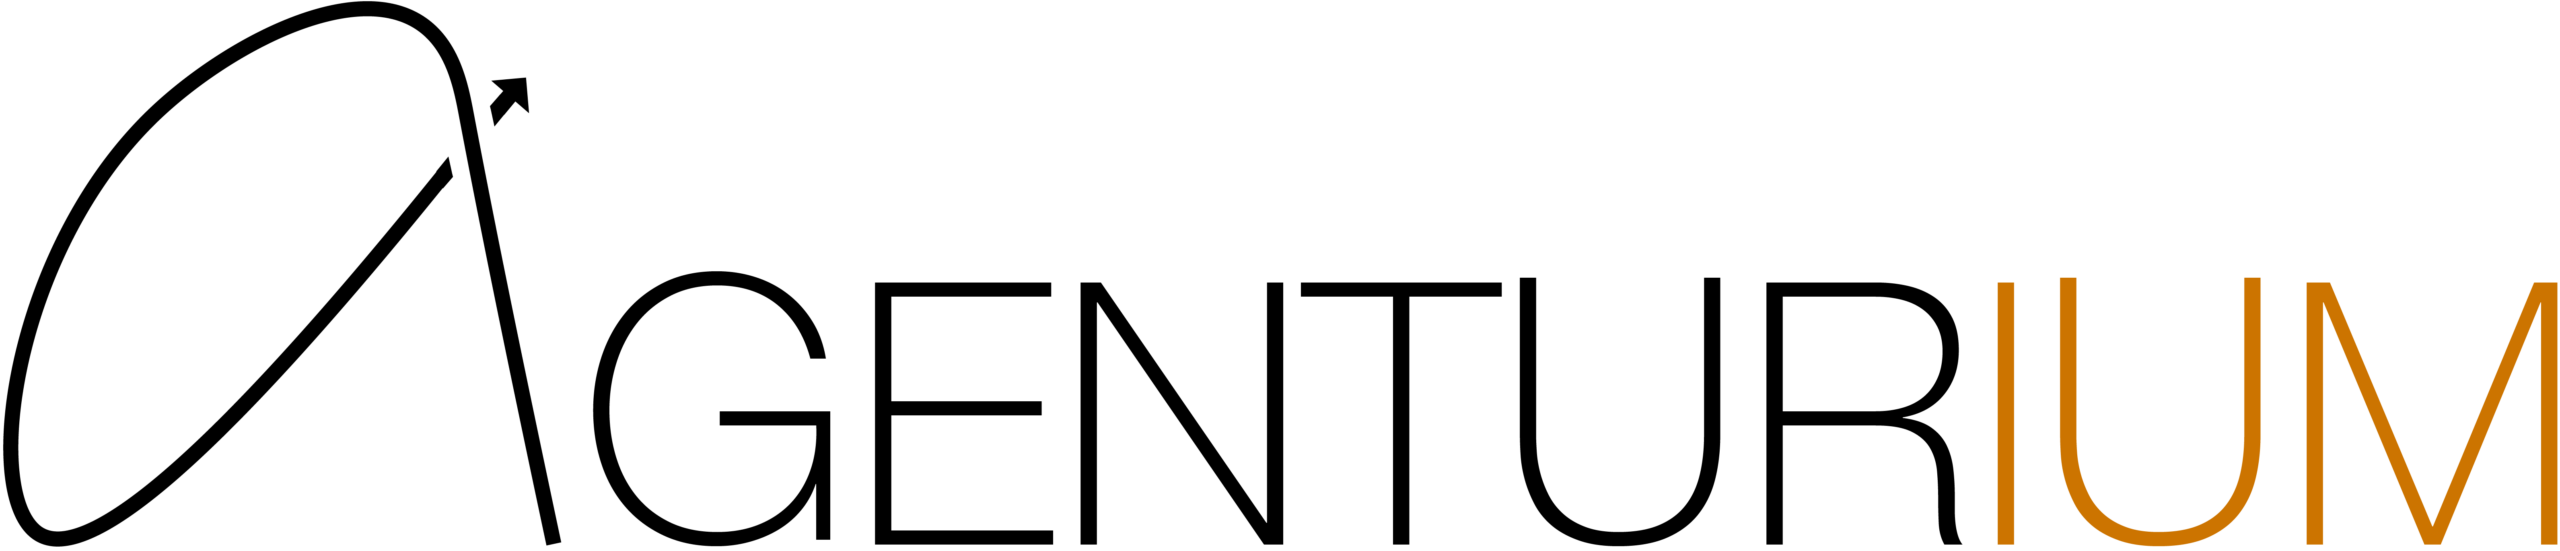 Agenturium-Logo-Lang-Sort